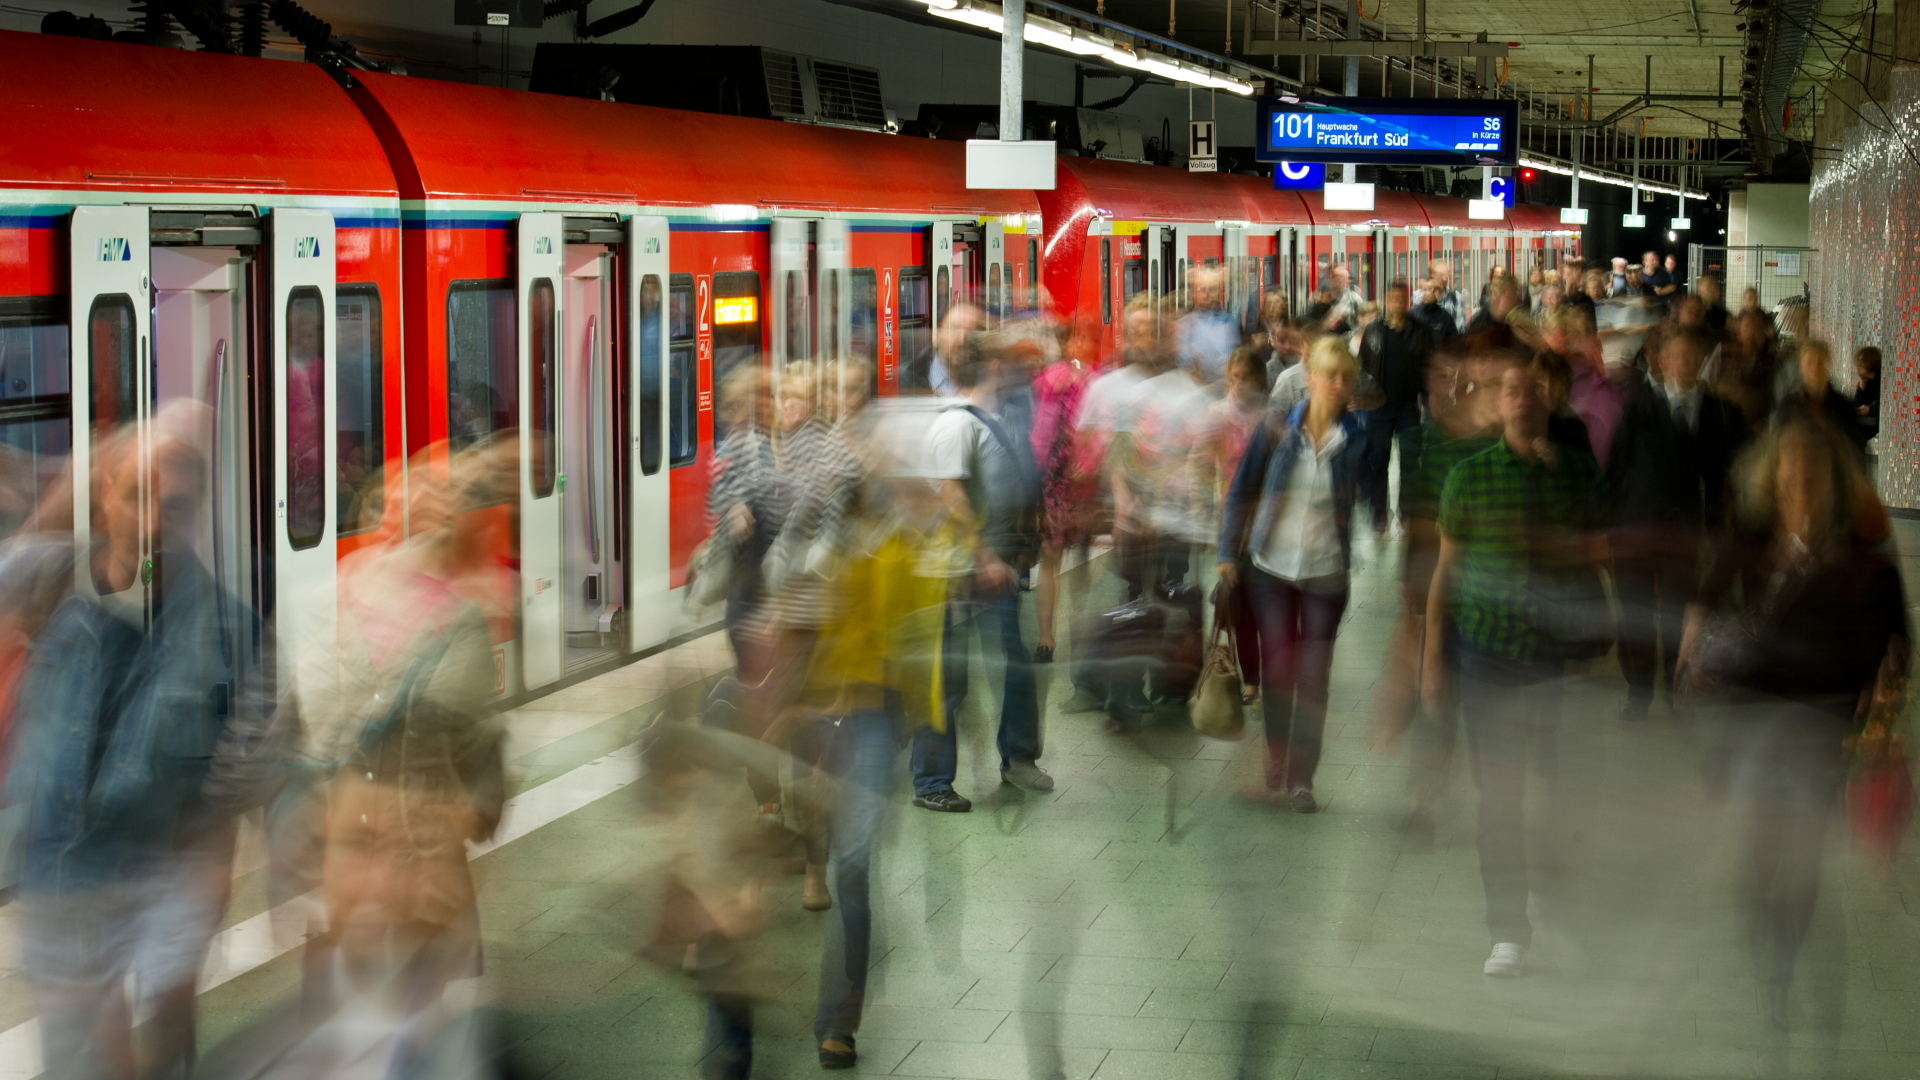  Viele Menschen verlassen eine gerade eingefahrene S-Bahn im unteren Teil des Hauptbahnhofs. | dpa